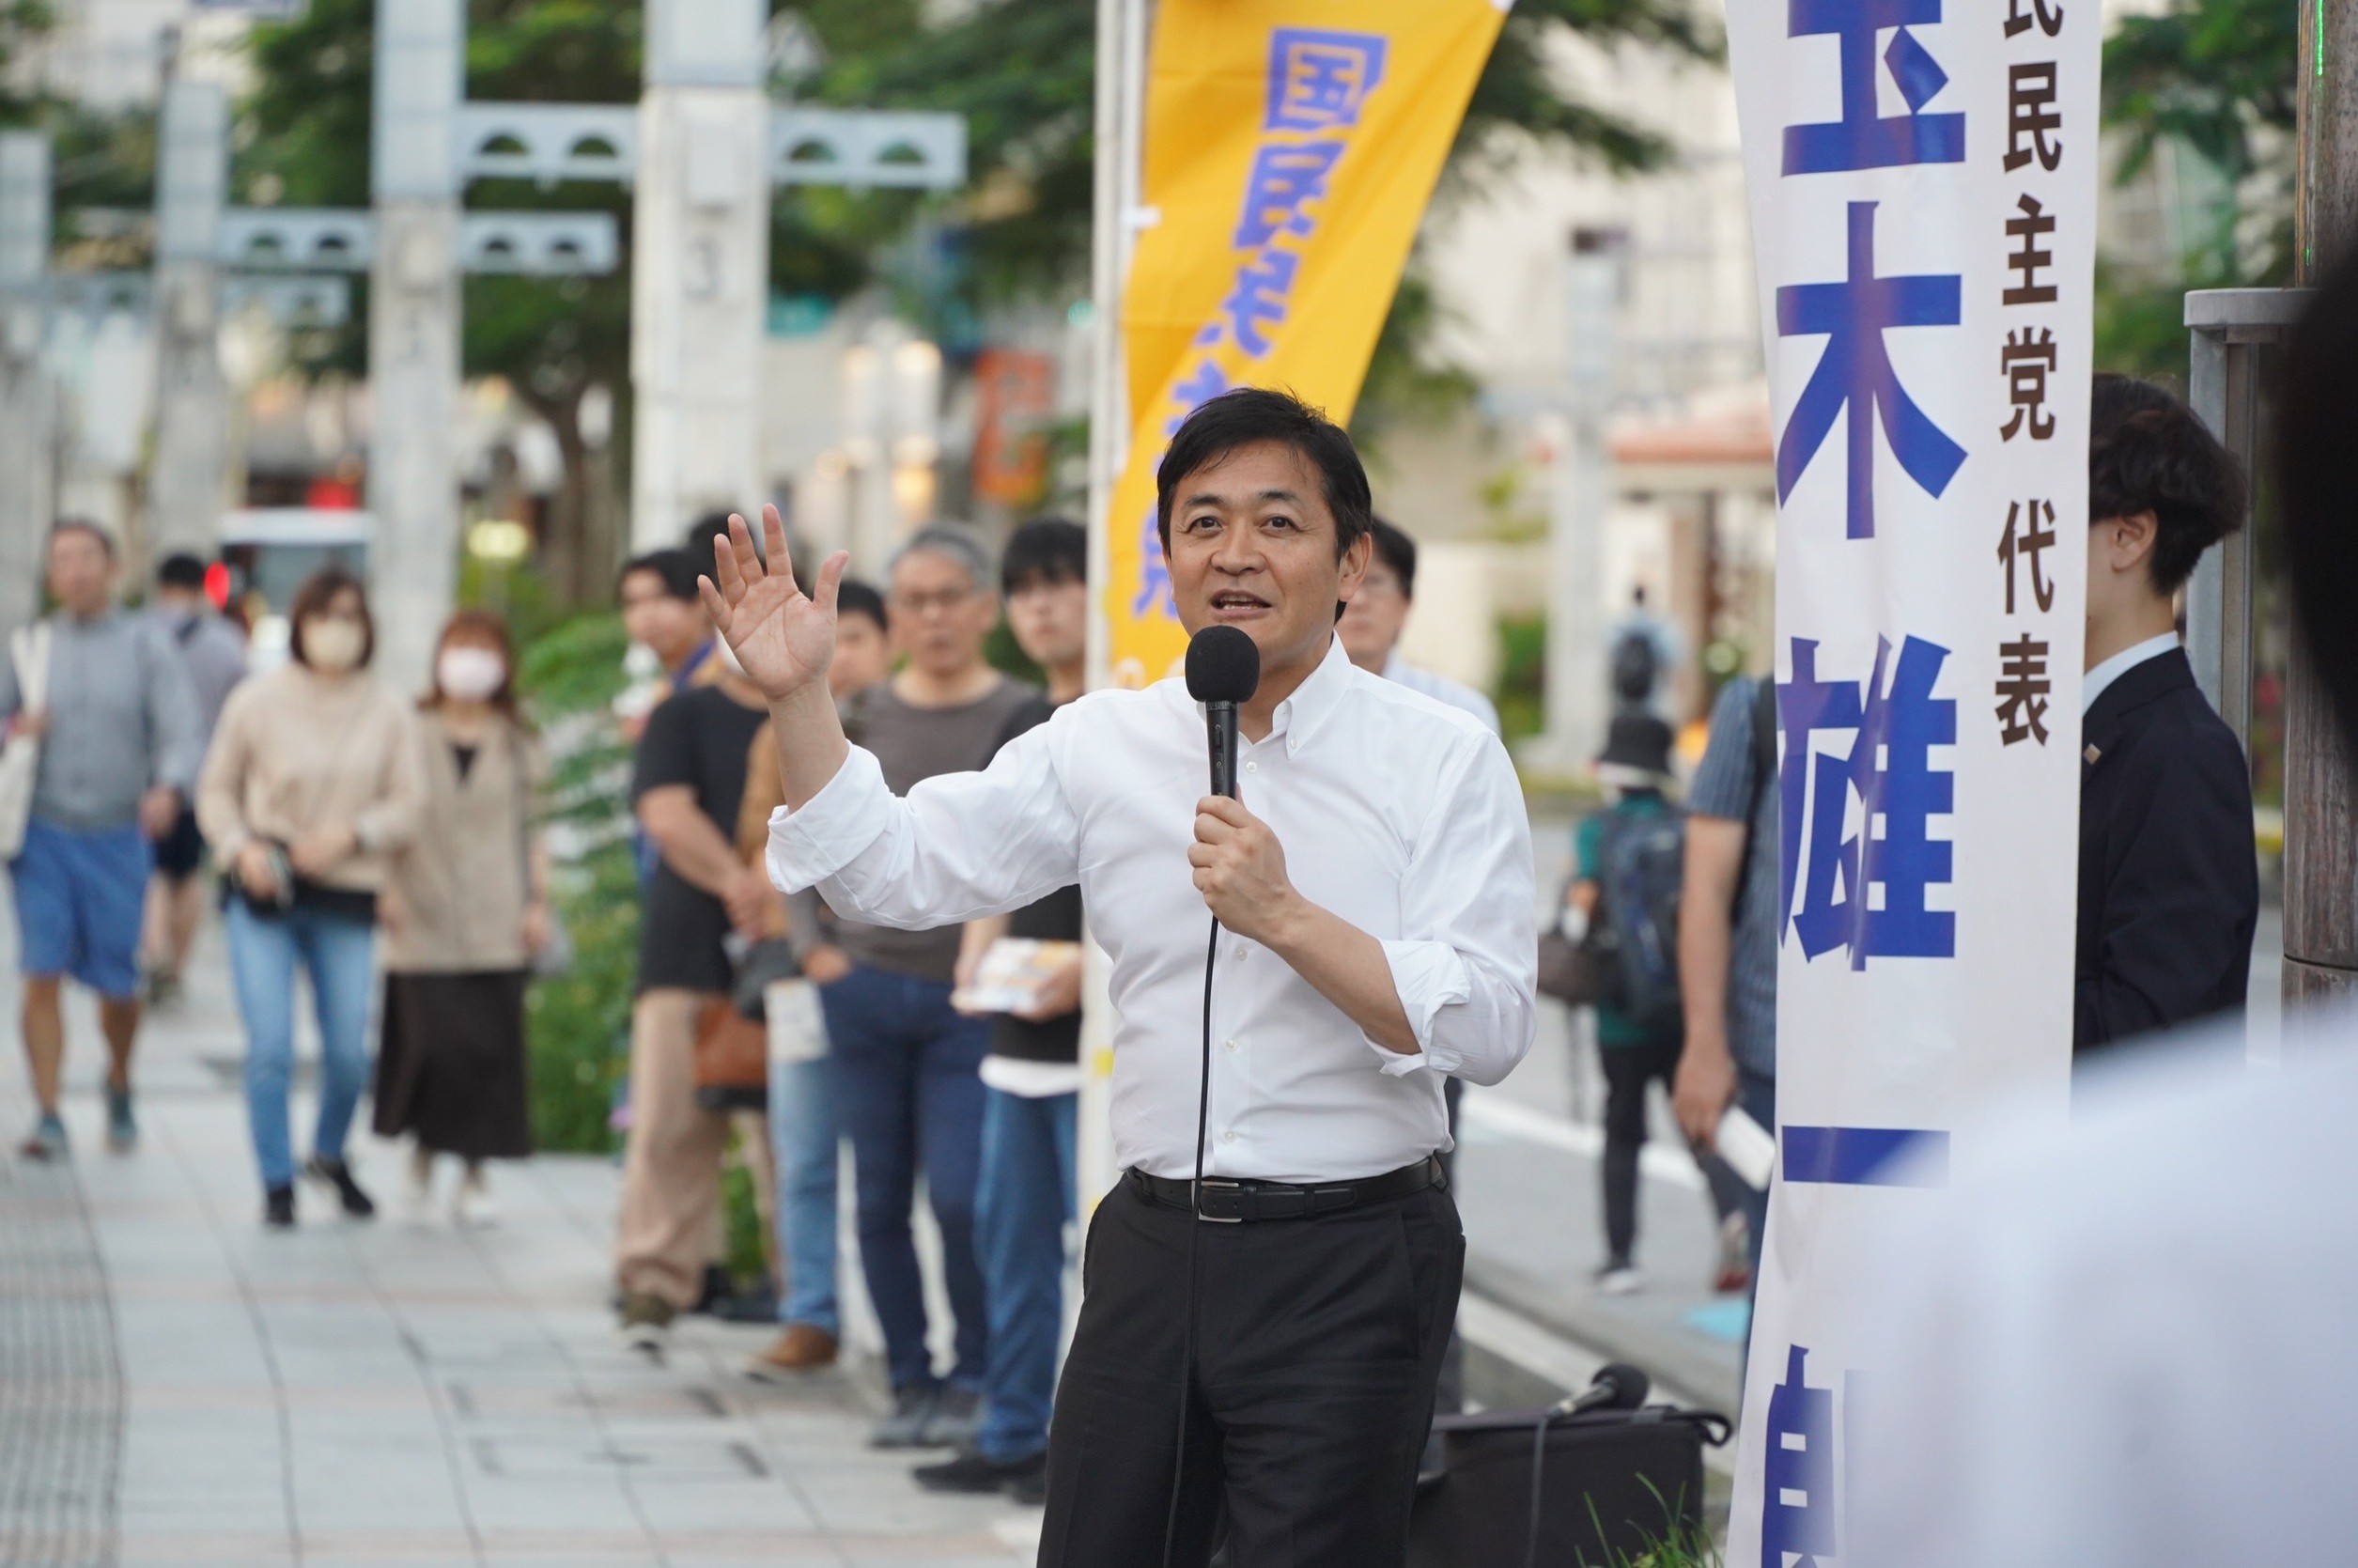 【沖縄】「沖縄のための政治を実現していきたい」玉木代表が1年ぶりに那覇市で演説